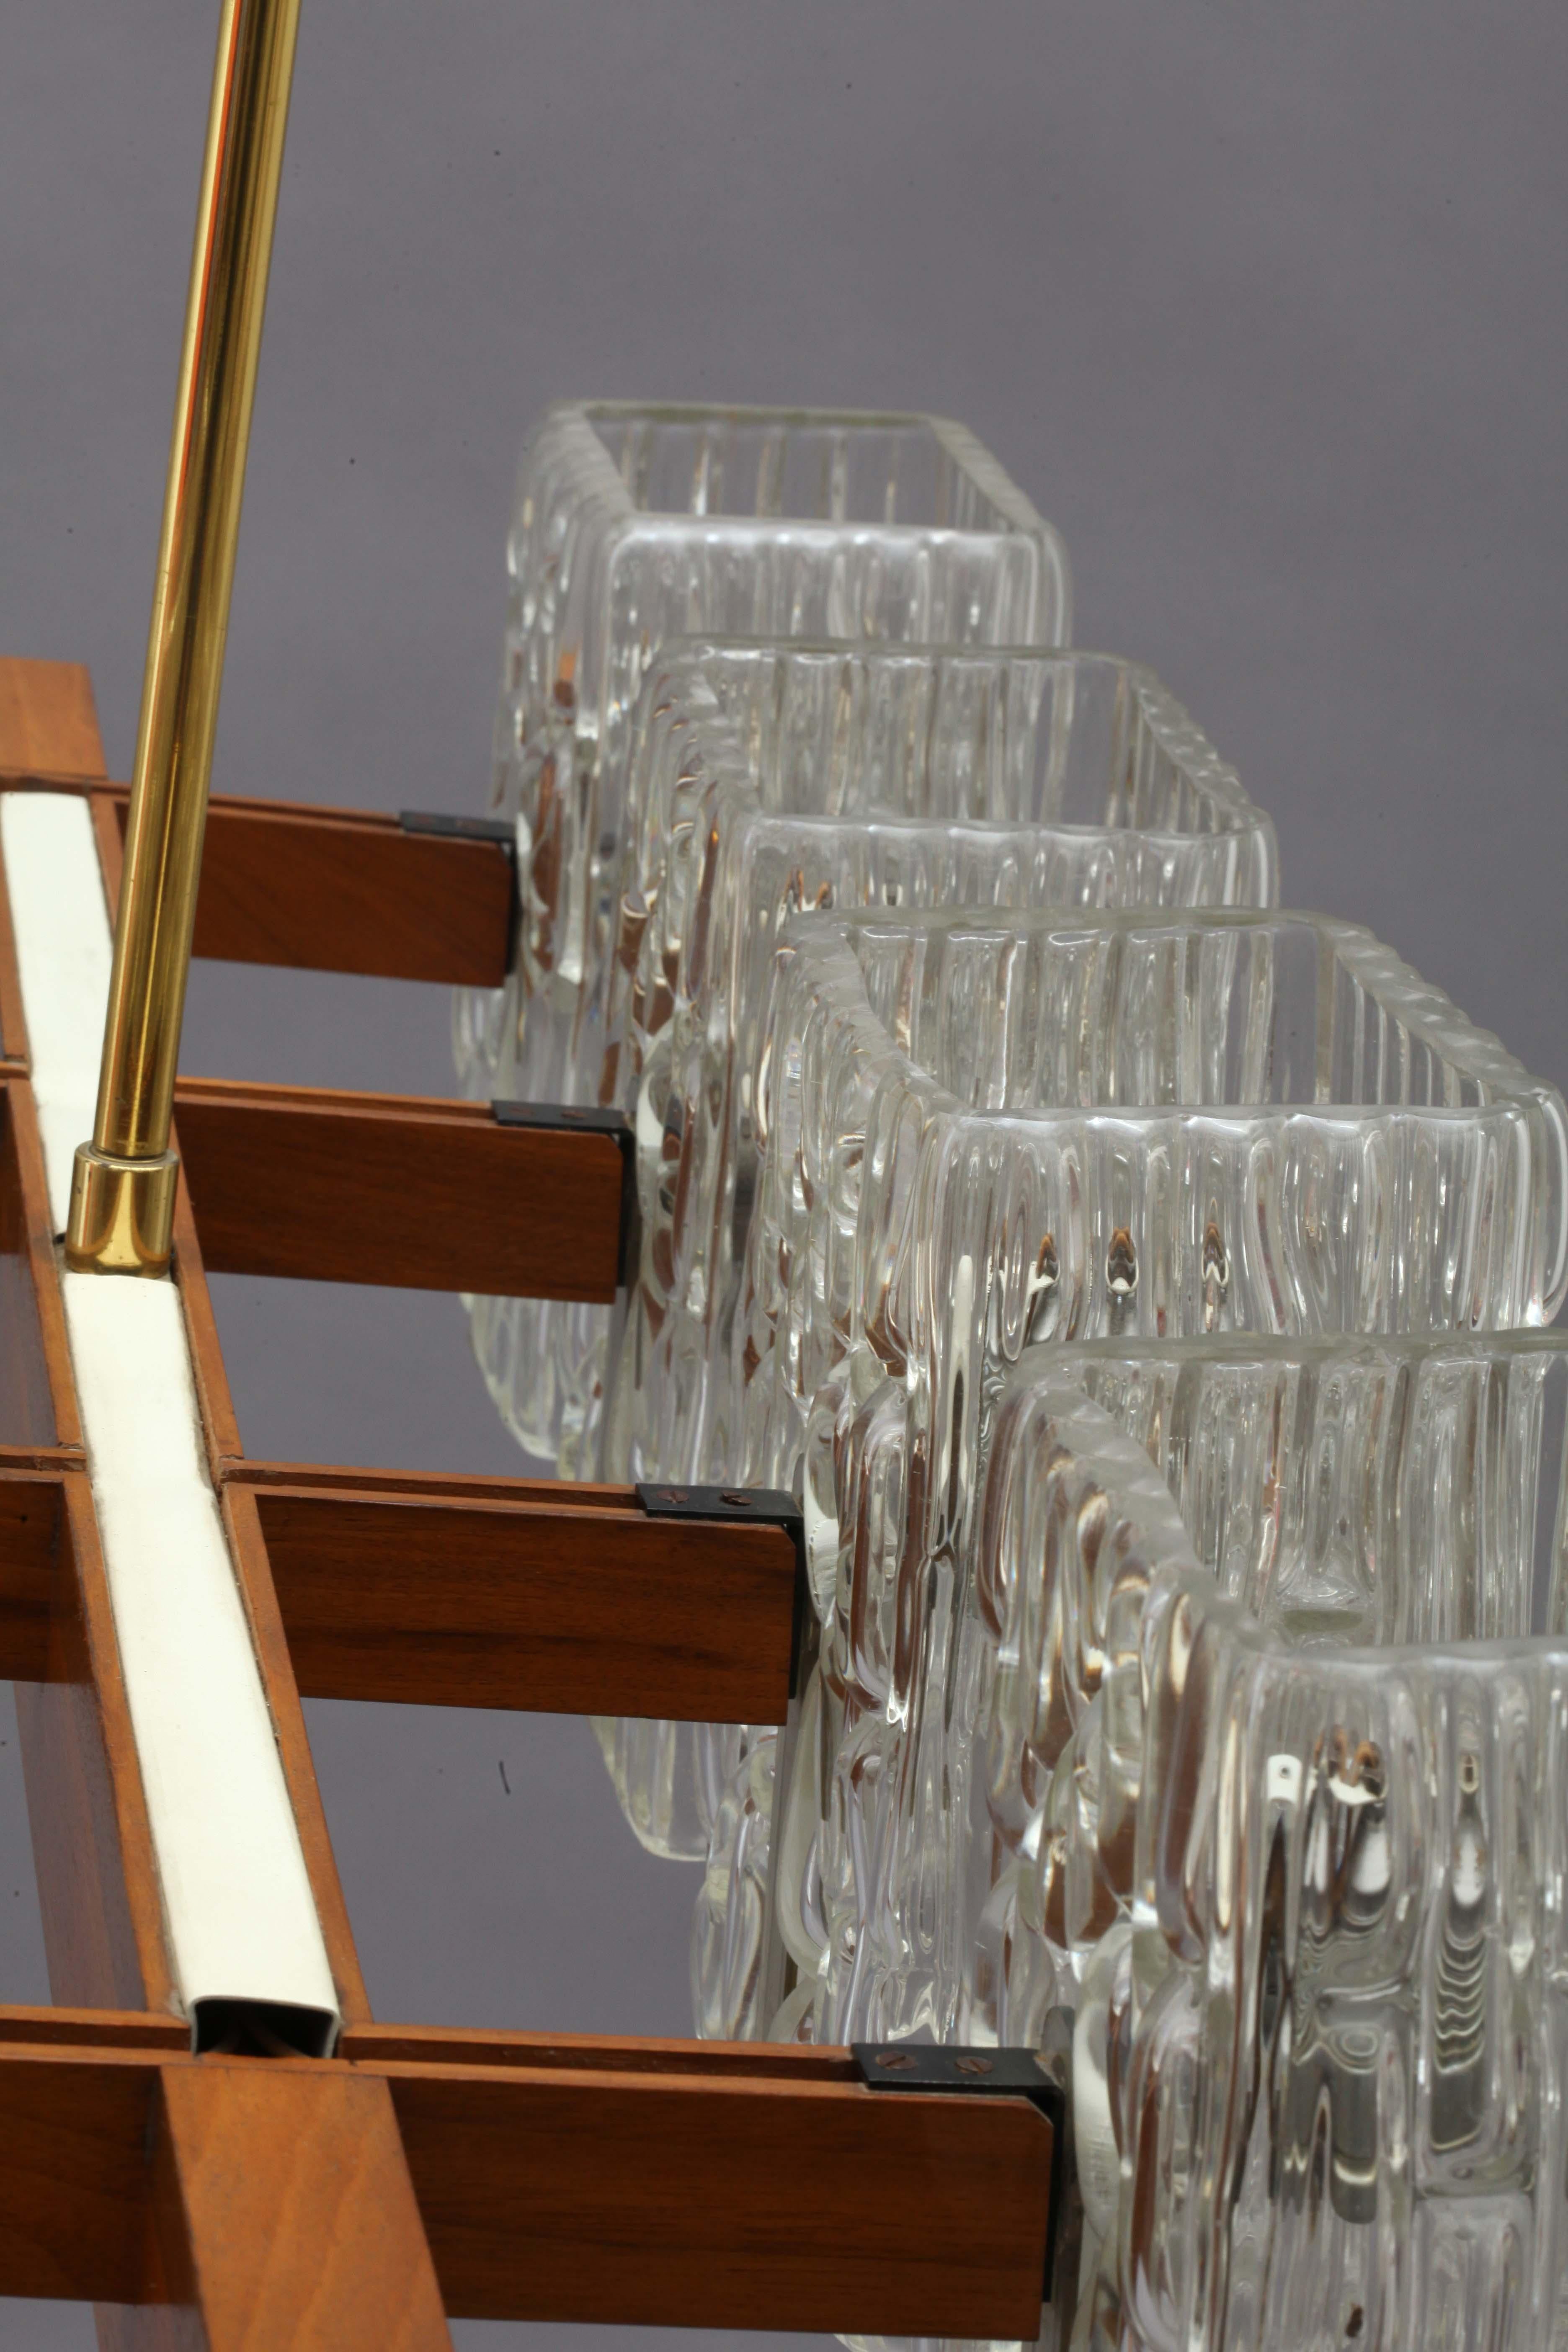 rechteckige Hängelampe,
acht strukturierte Glasschirme,
entworfen von Rupert Nikoll,
Wien 1950.
Die Länge des Stiels kann kostenlos auf jede beliebige Größe geändert werden
acht Lampenfassungen E 27